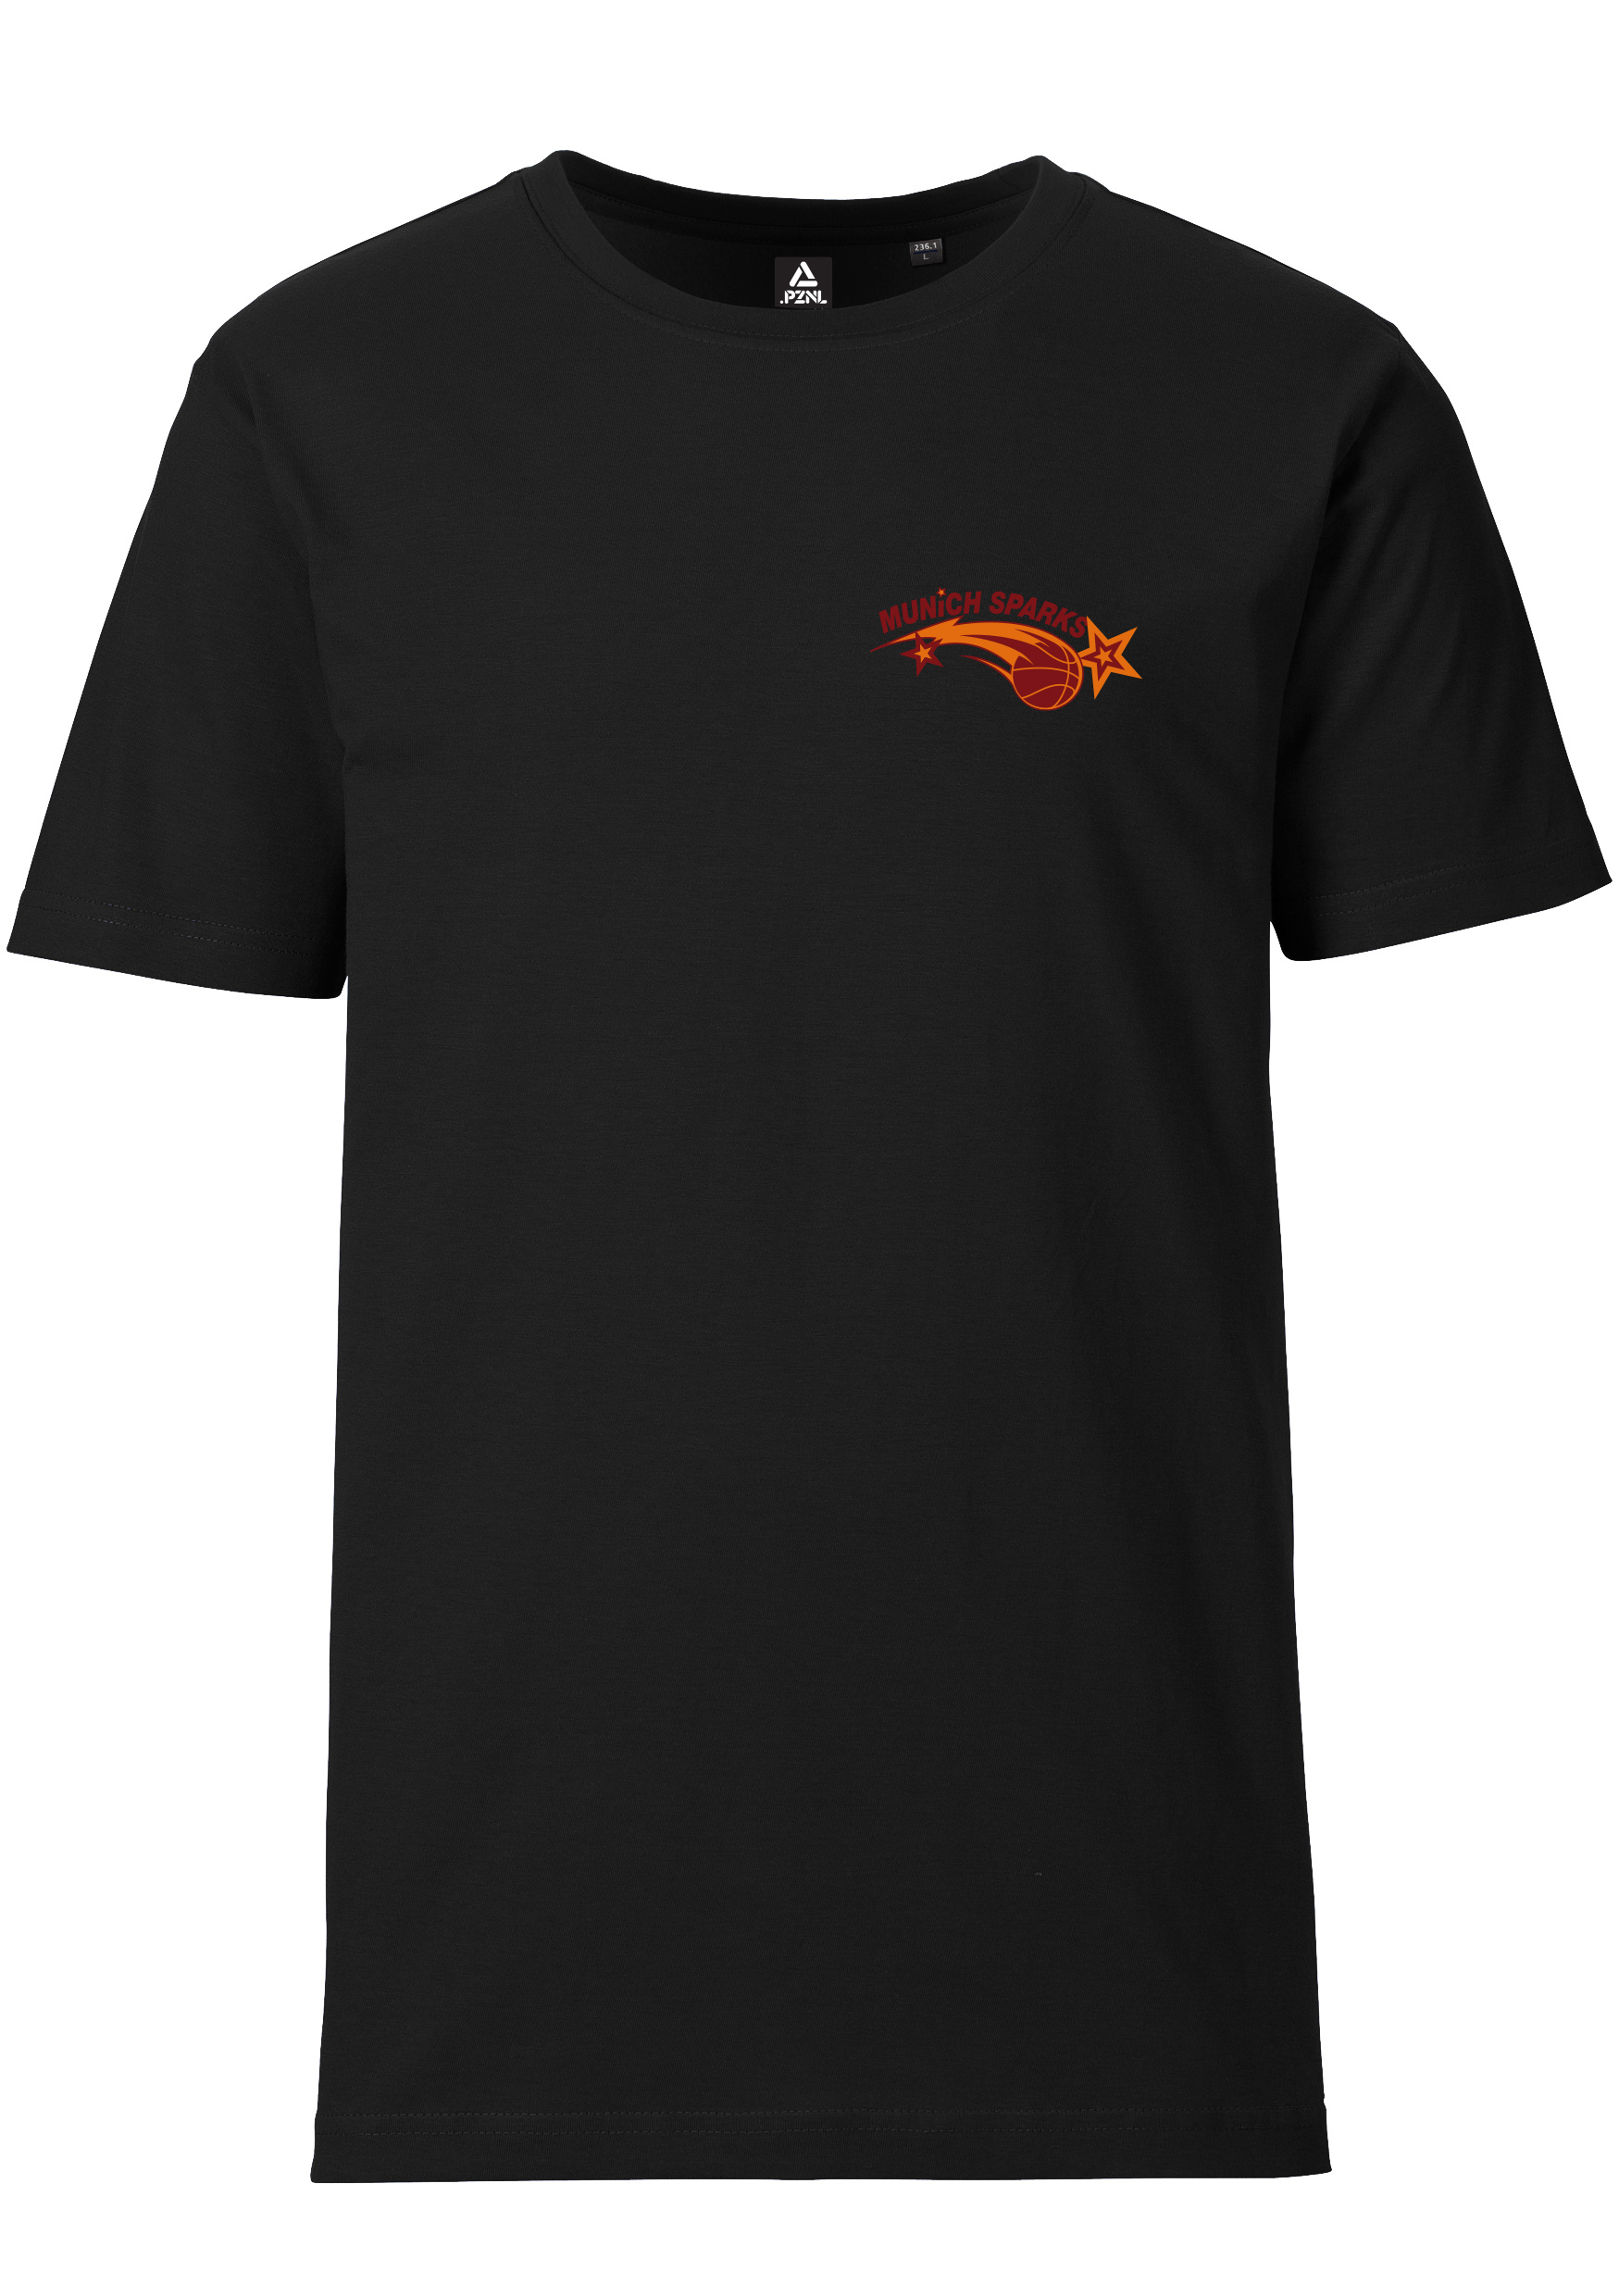 Munich Sparks Unisex T-Shirt Logo klein